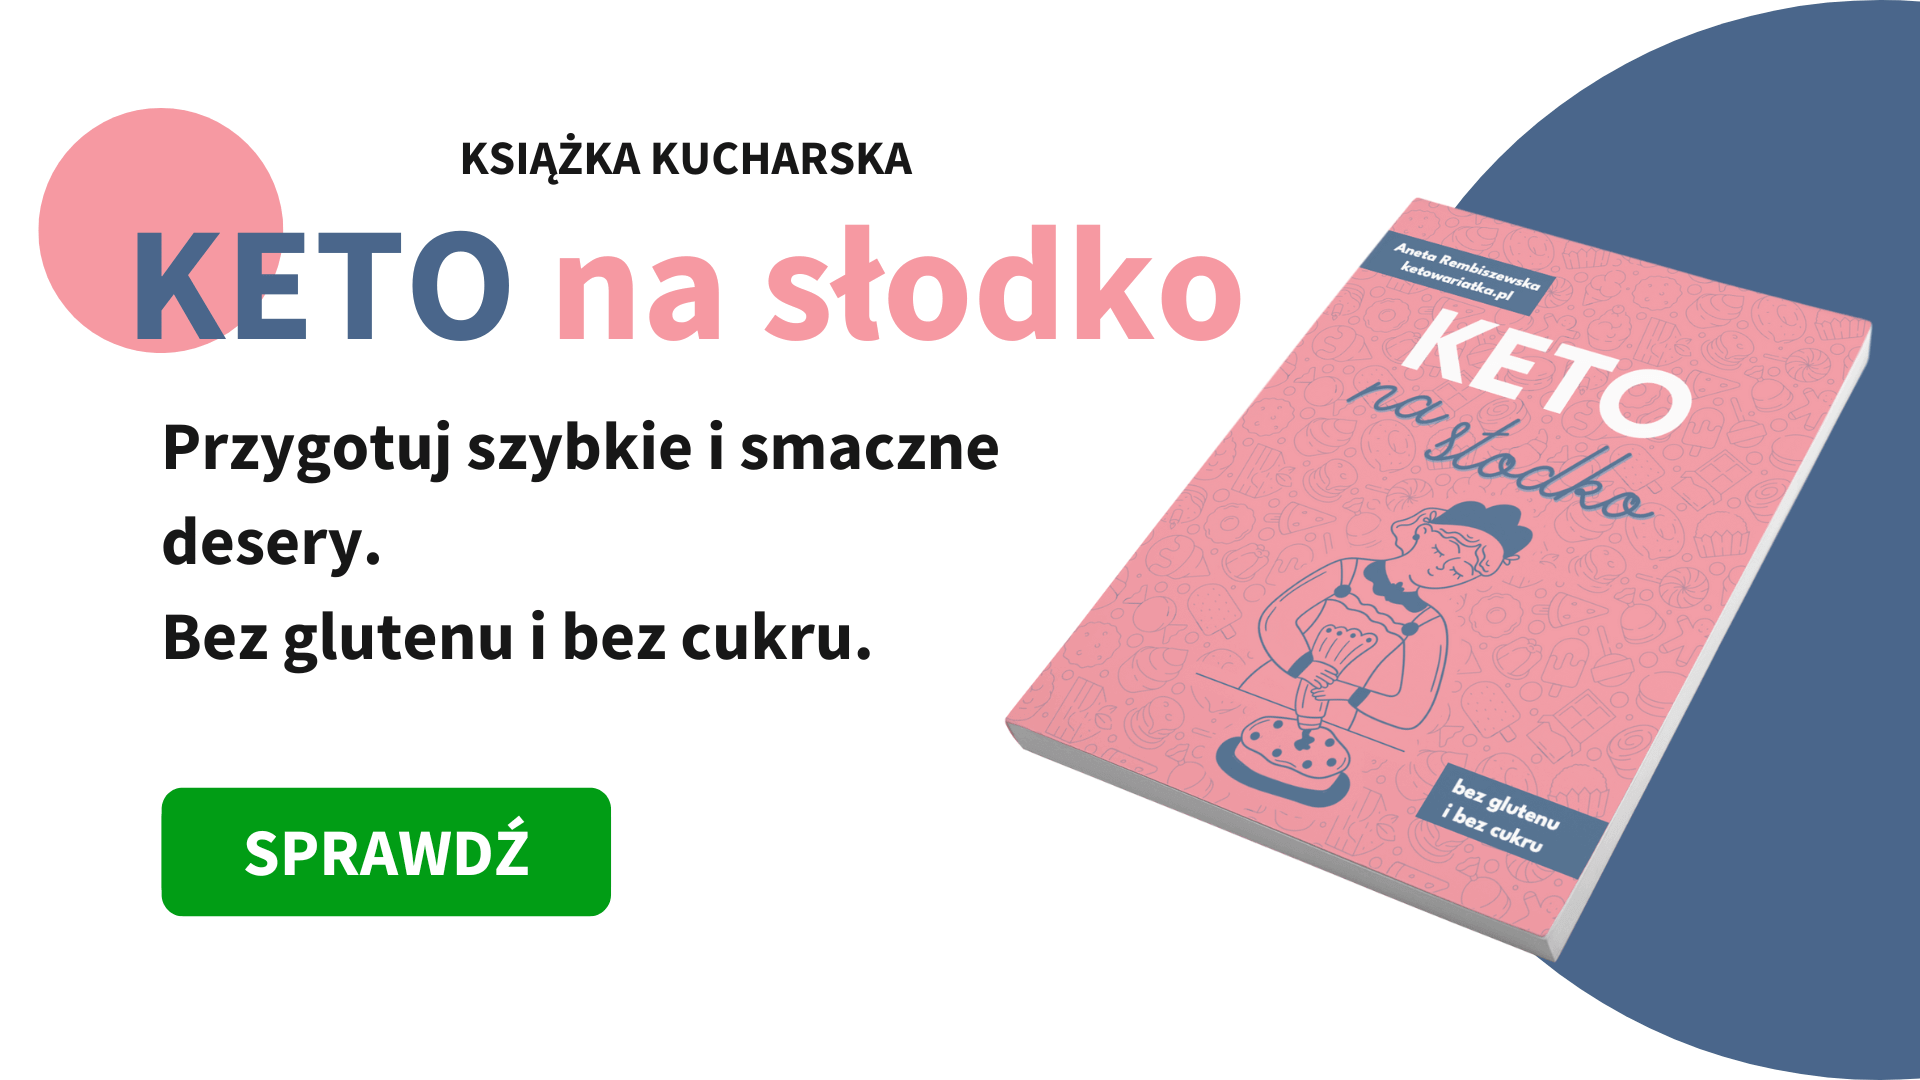 keto-na-slodko-ksiazka